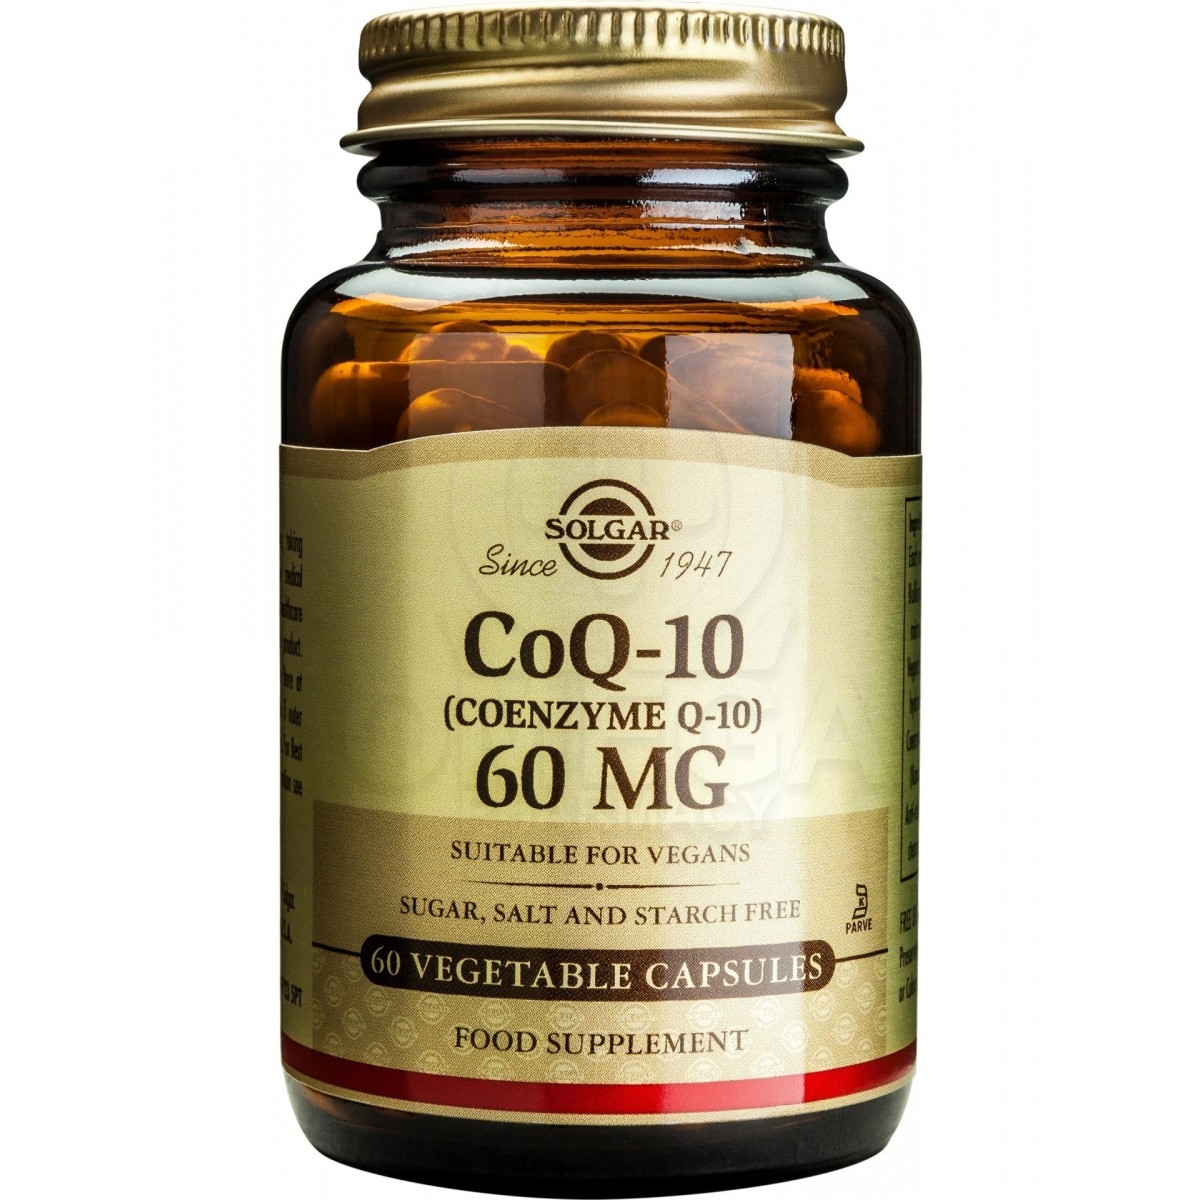 Αμινοξεα - Συνενζυμο Q10 - Συμπληρωματα διατροφης - SOLGAR CoQ-10 (Coenzyme  Q-10) 60mg Συμπλήρωμα Διατροφής με Συνένζυμο Q10, Εν